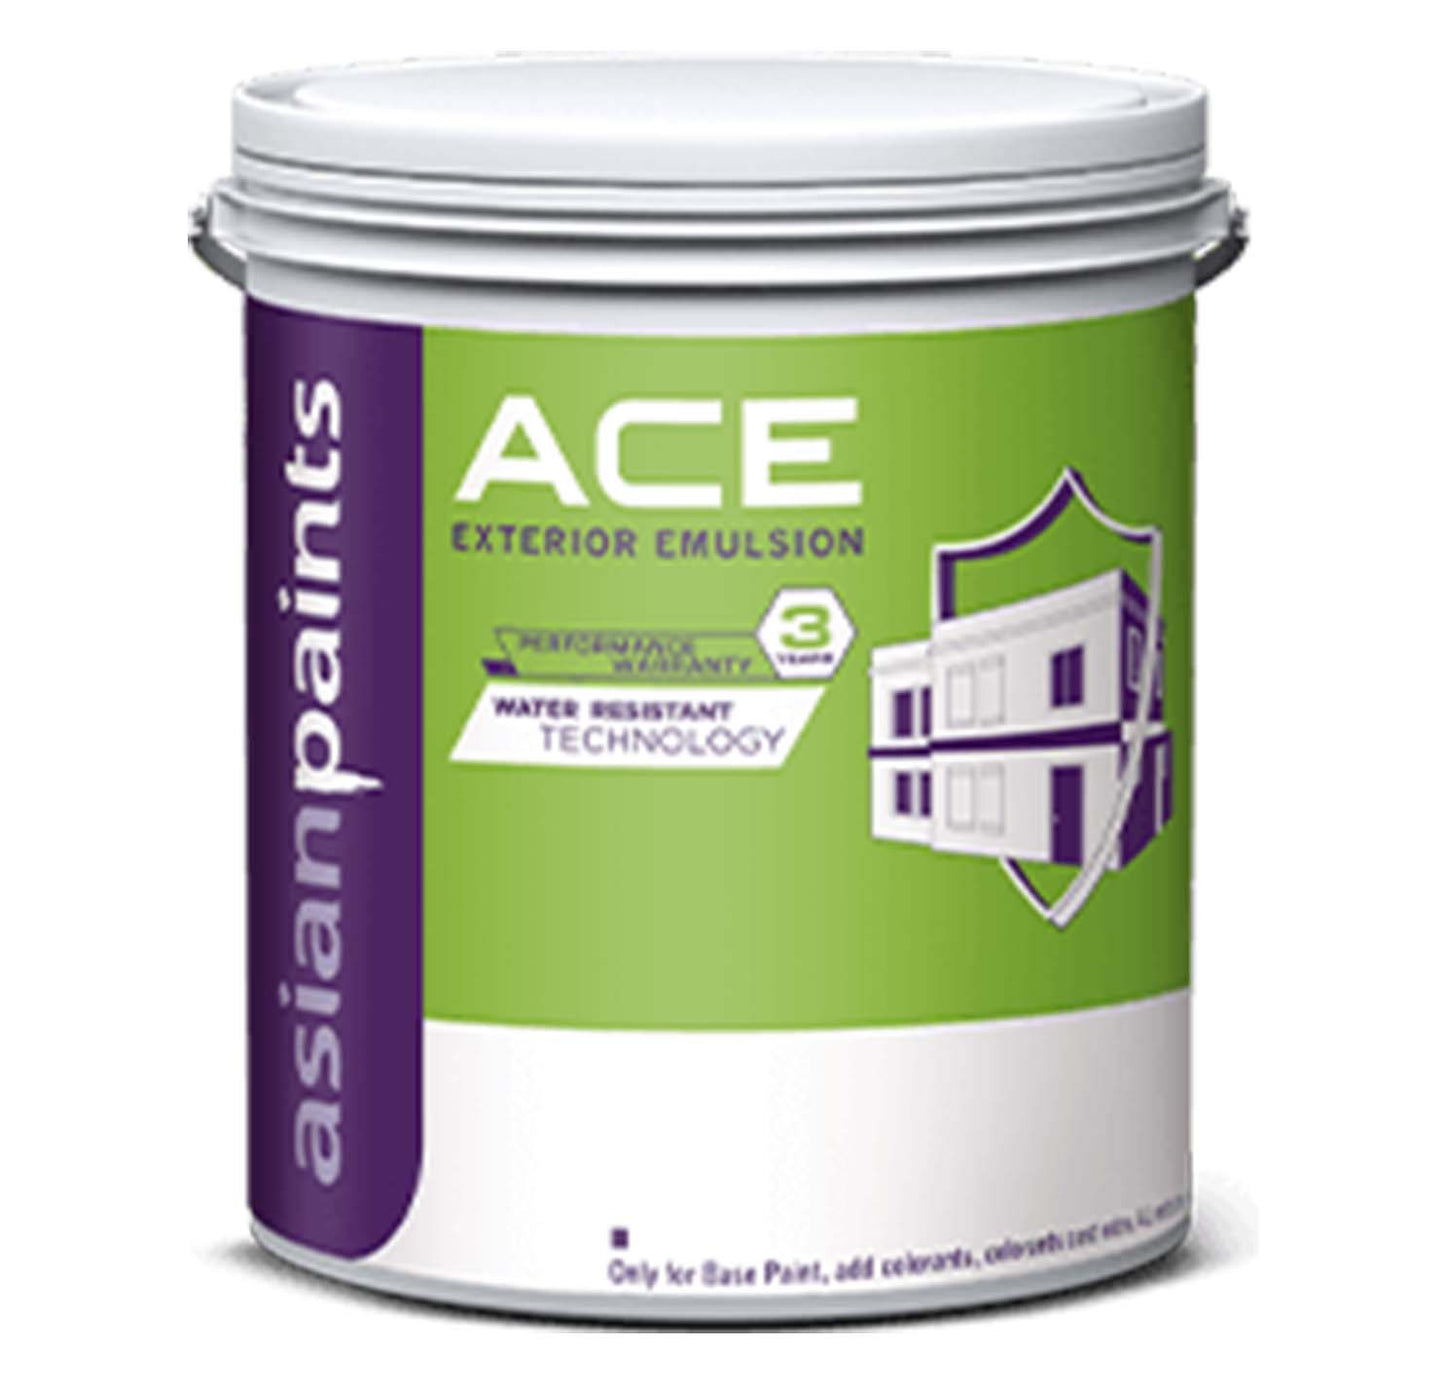 Asian Paints Ace Exterior Emulsion - White